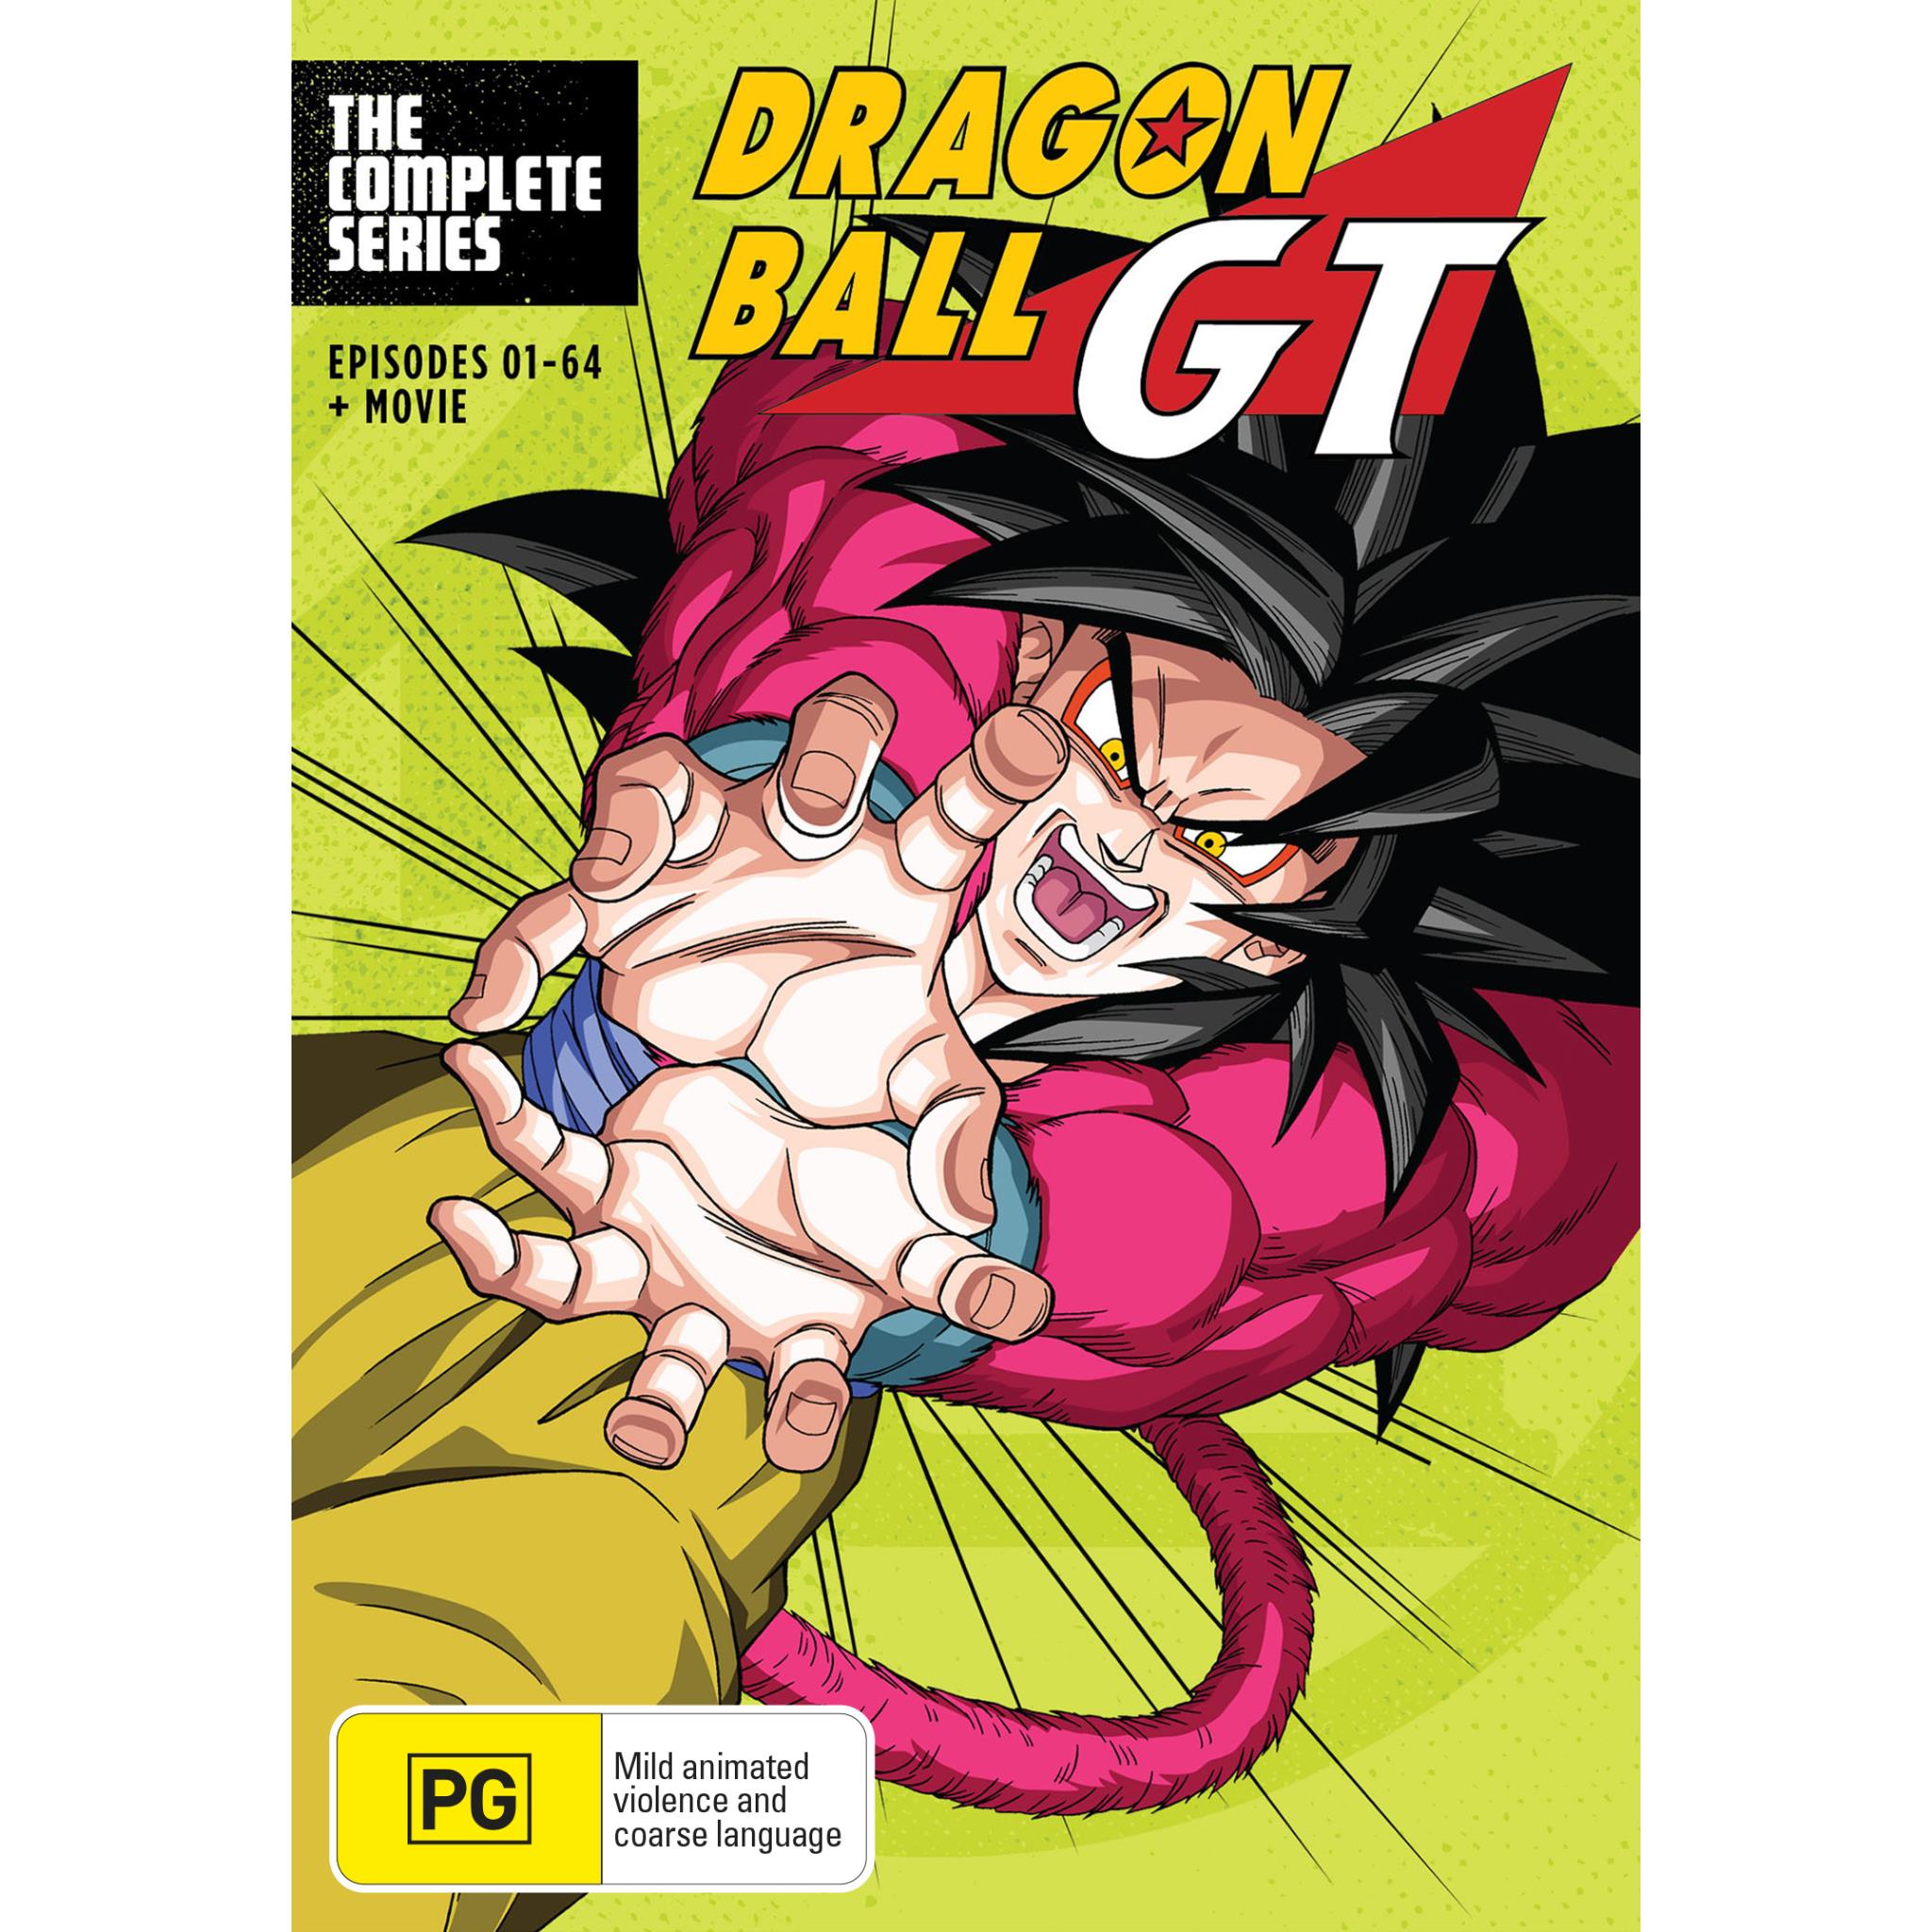 720 Dragon Ball GT Illustration ideas